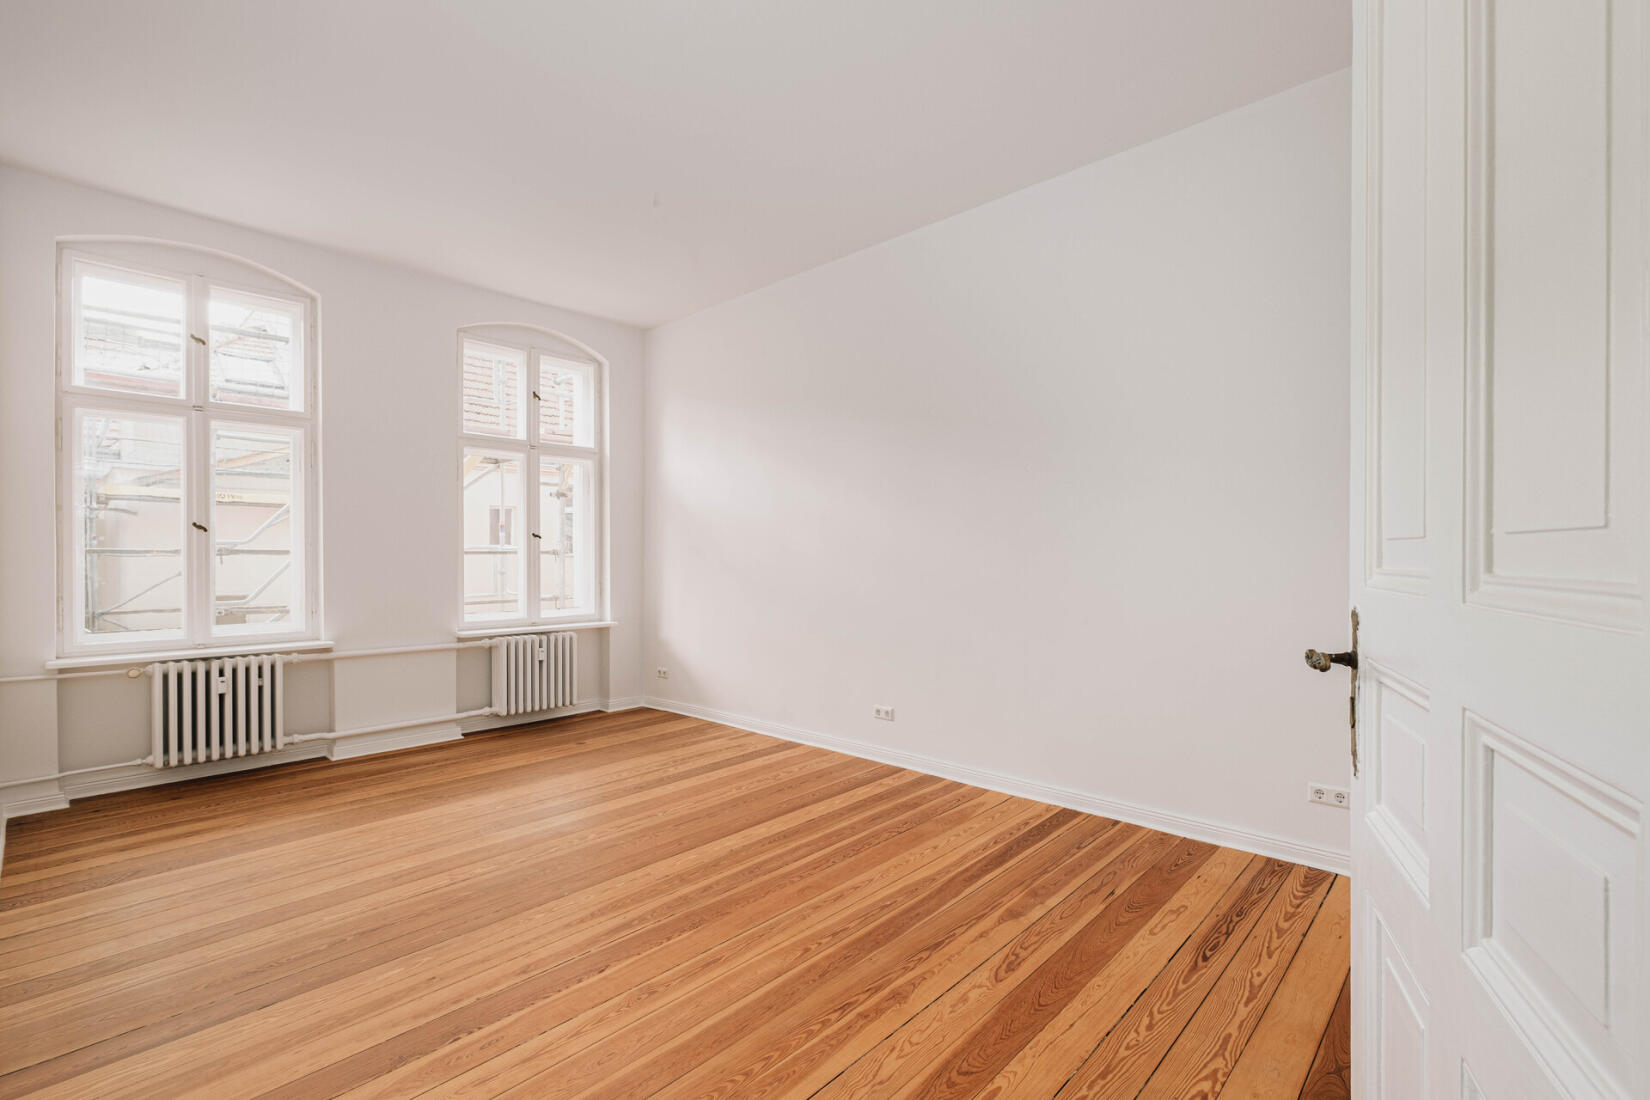 Jetzt kaufen & einziehen: Bezugsfreie 3-Zimmer-Eigentumswohnung in Berlin-Charlottenburg | Titelbild